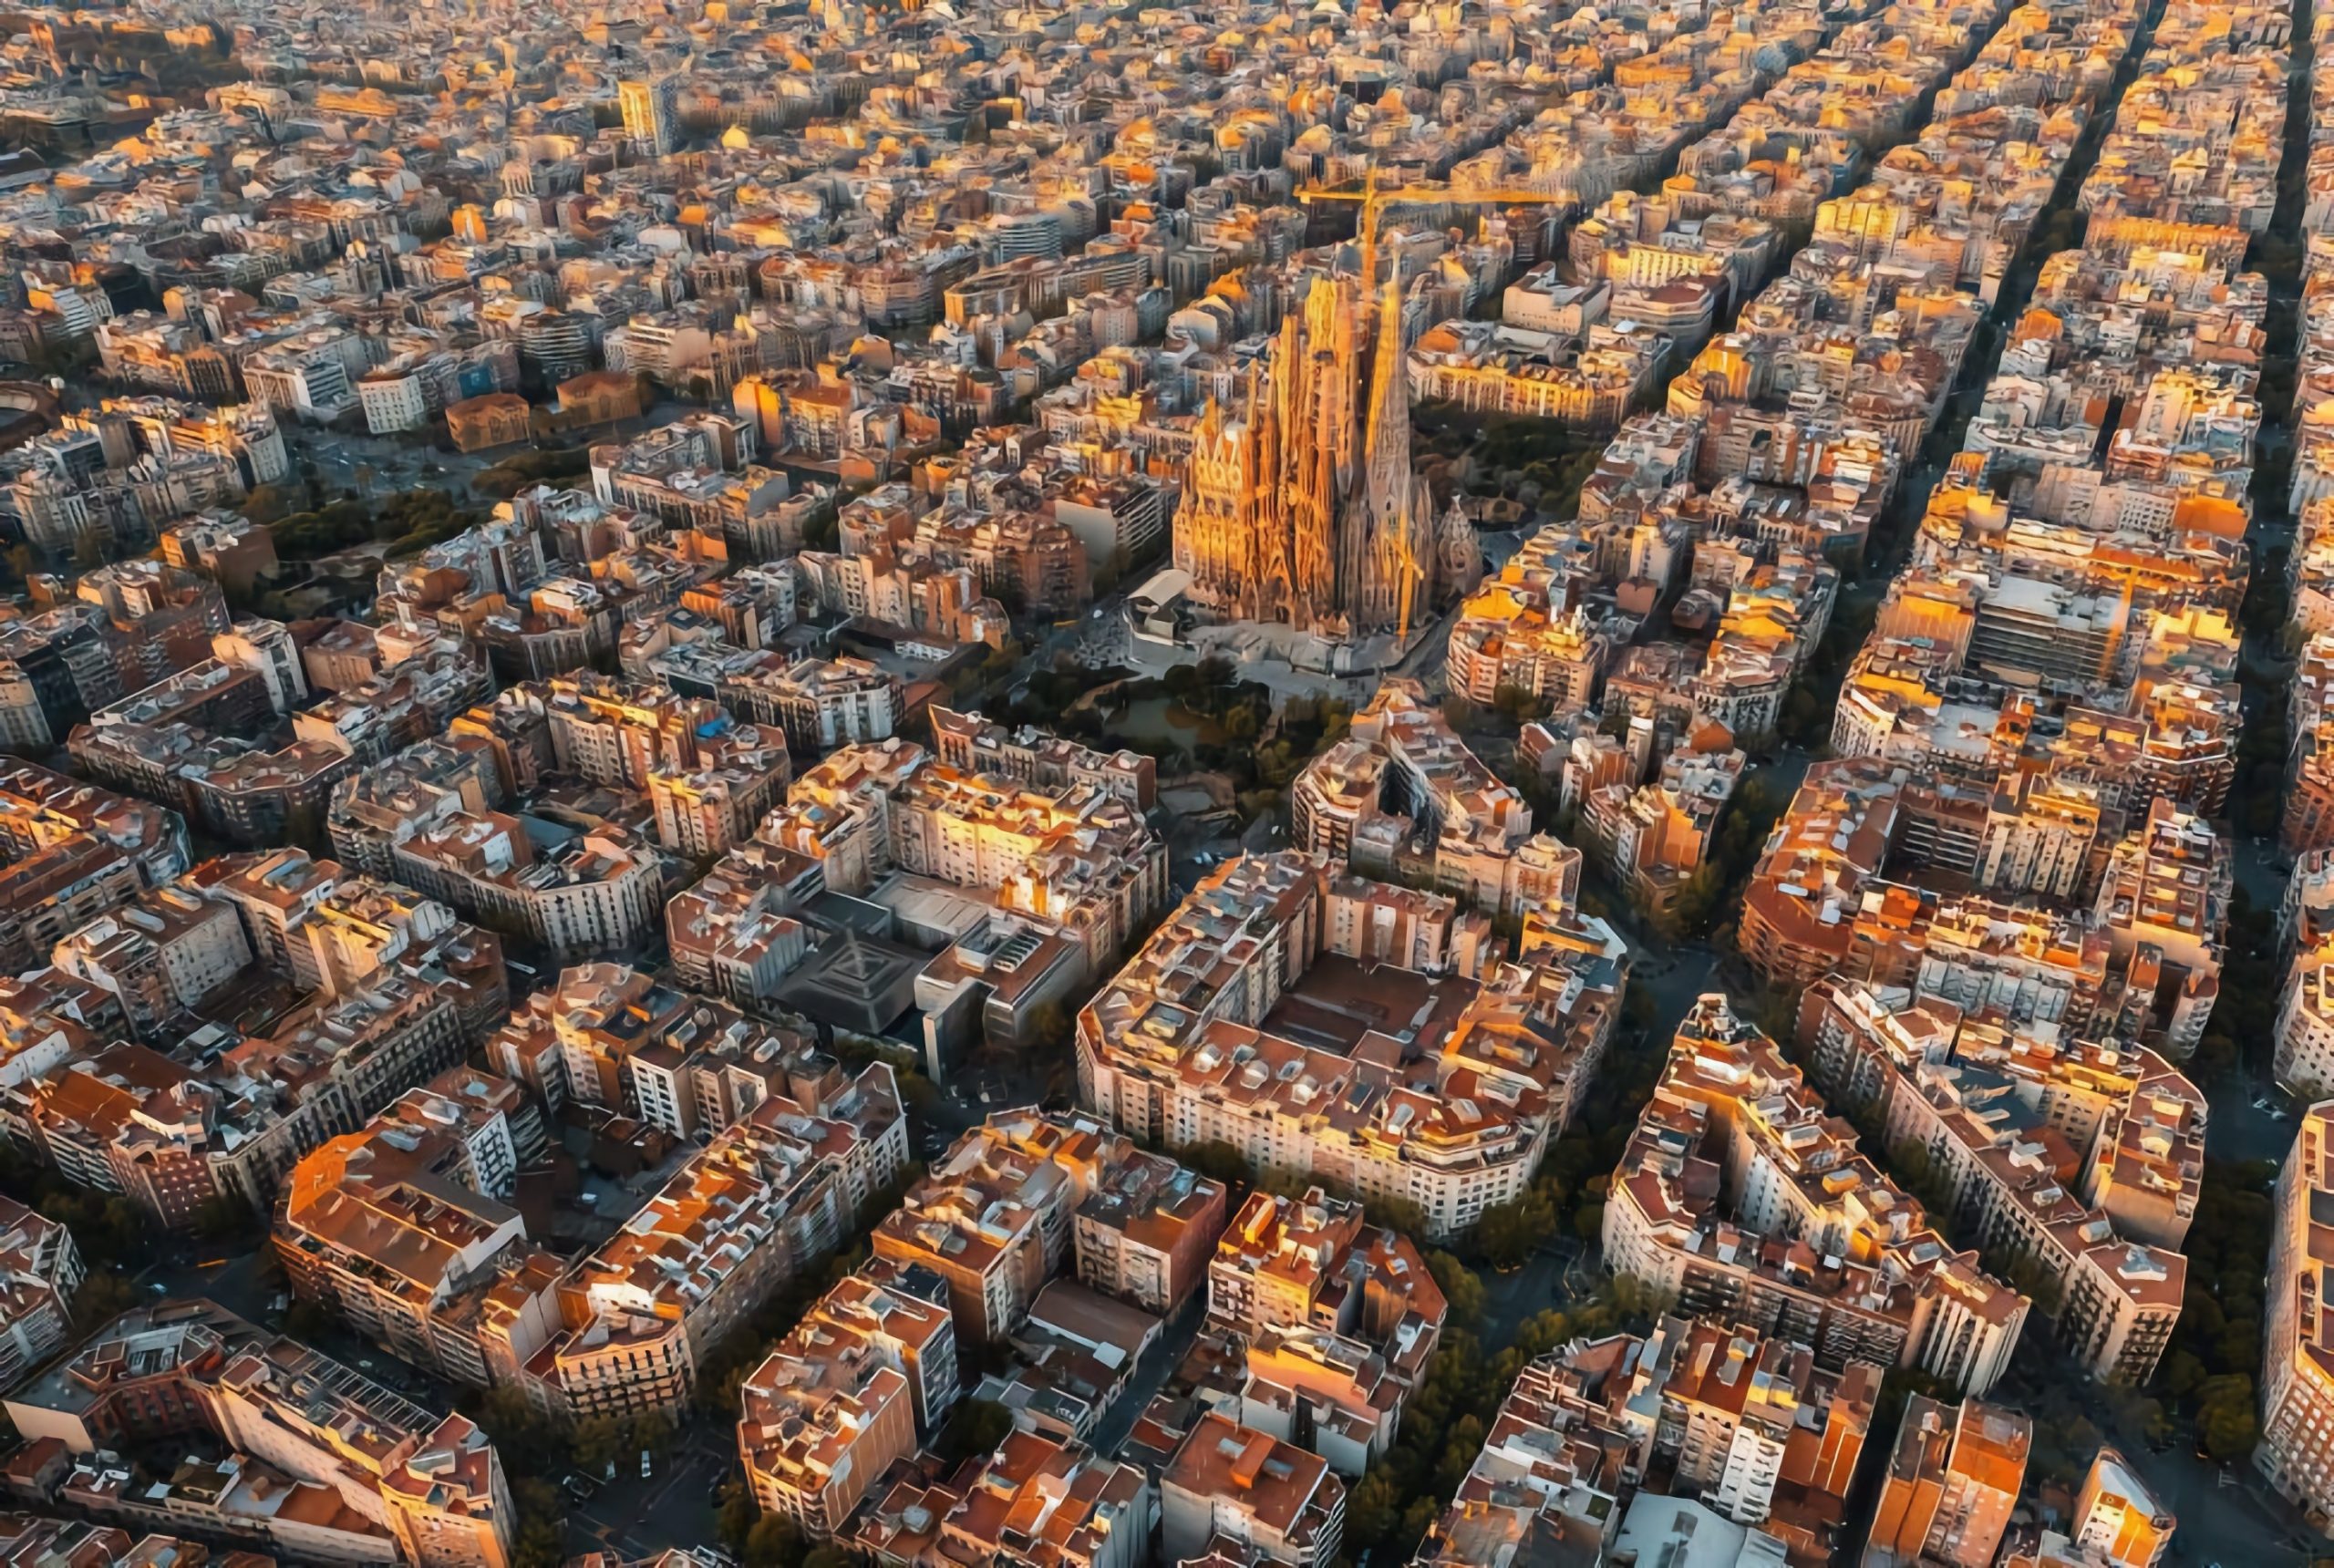 Barcelona a şters o linie de autobuz din Google Maps, pentru a o ascunde de turişti